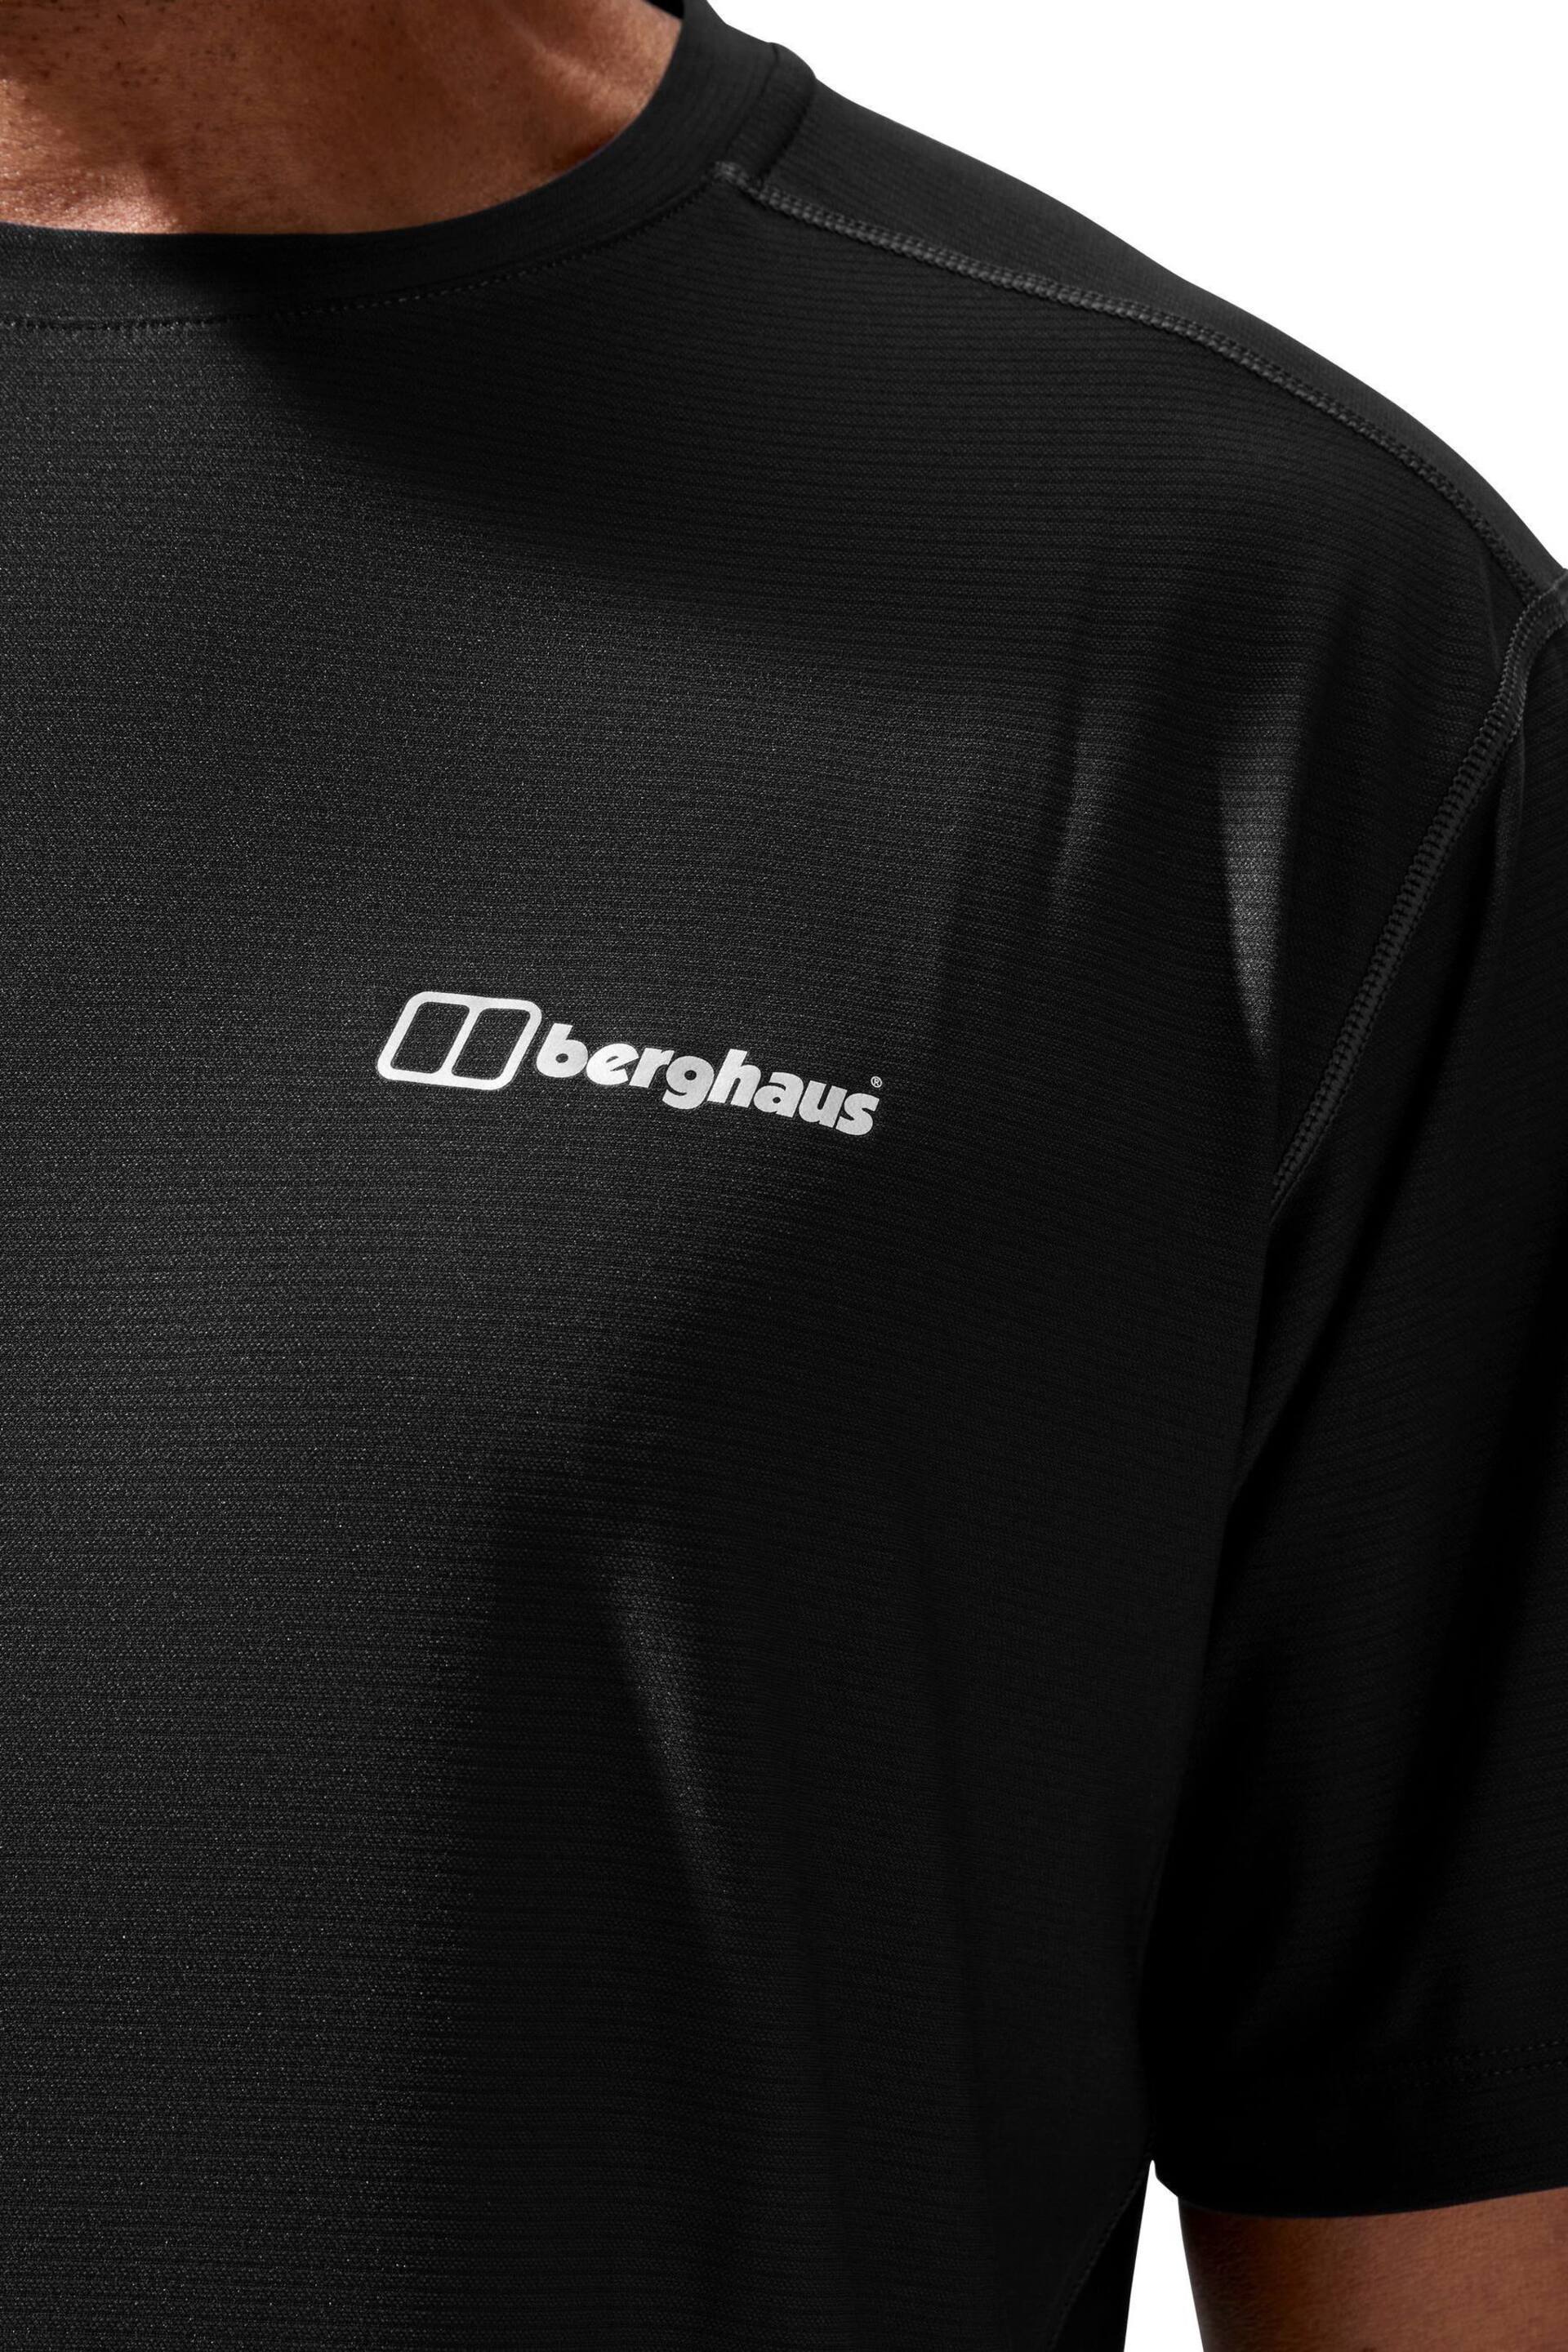 Berghaus 24/7 Short Sleeve Tech T-Shirt - Image 11 of 15